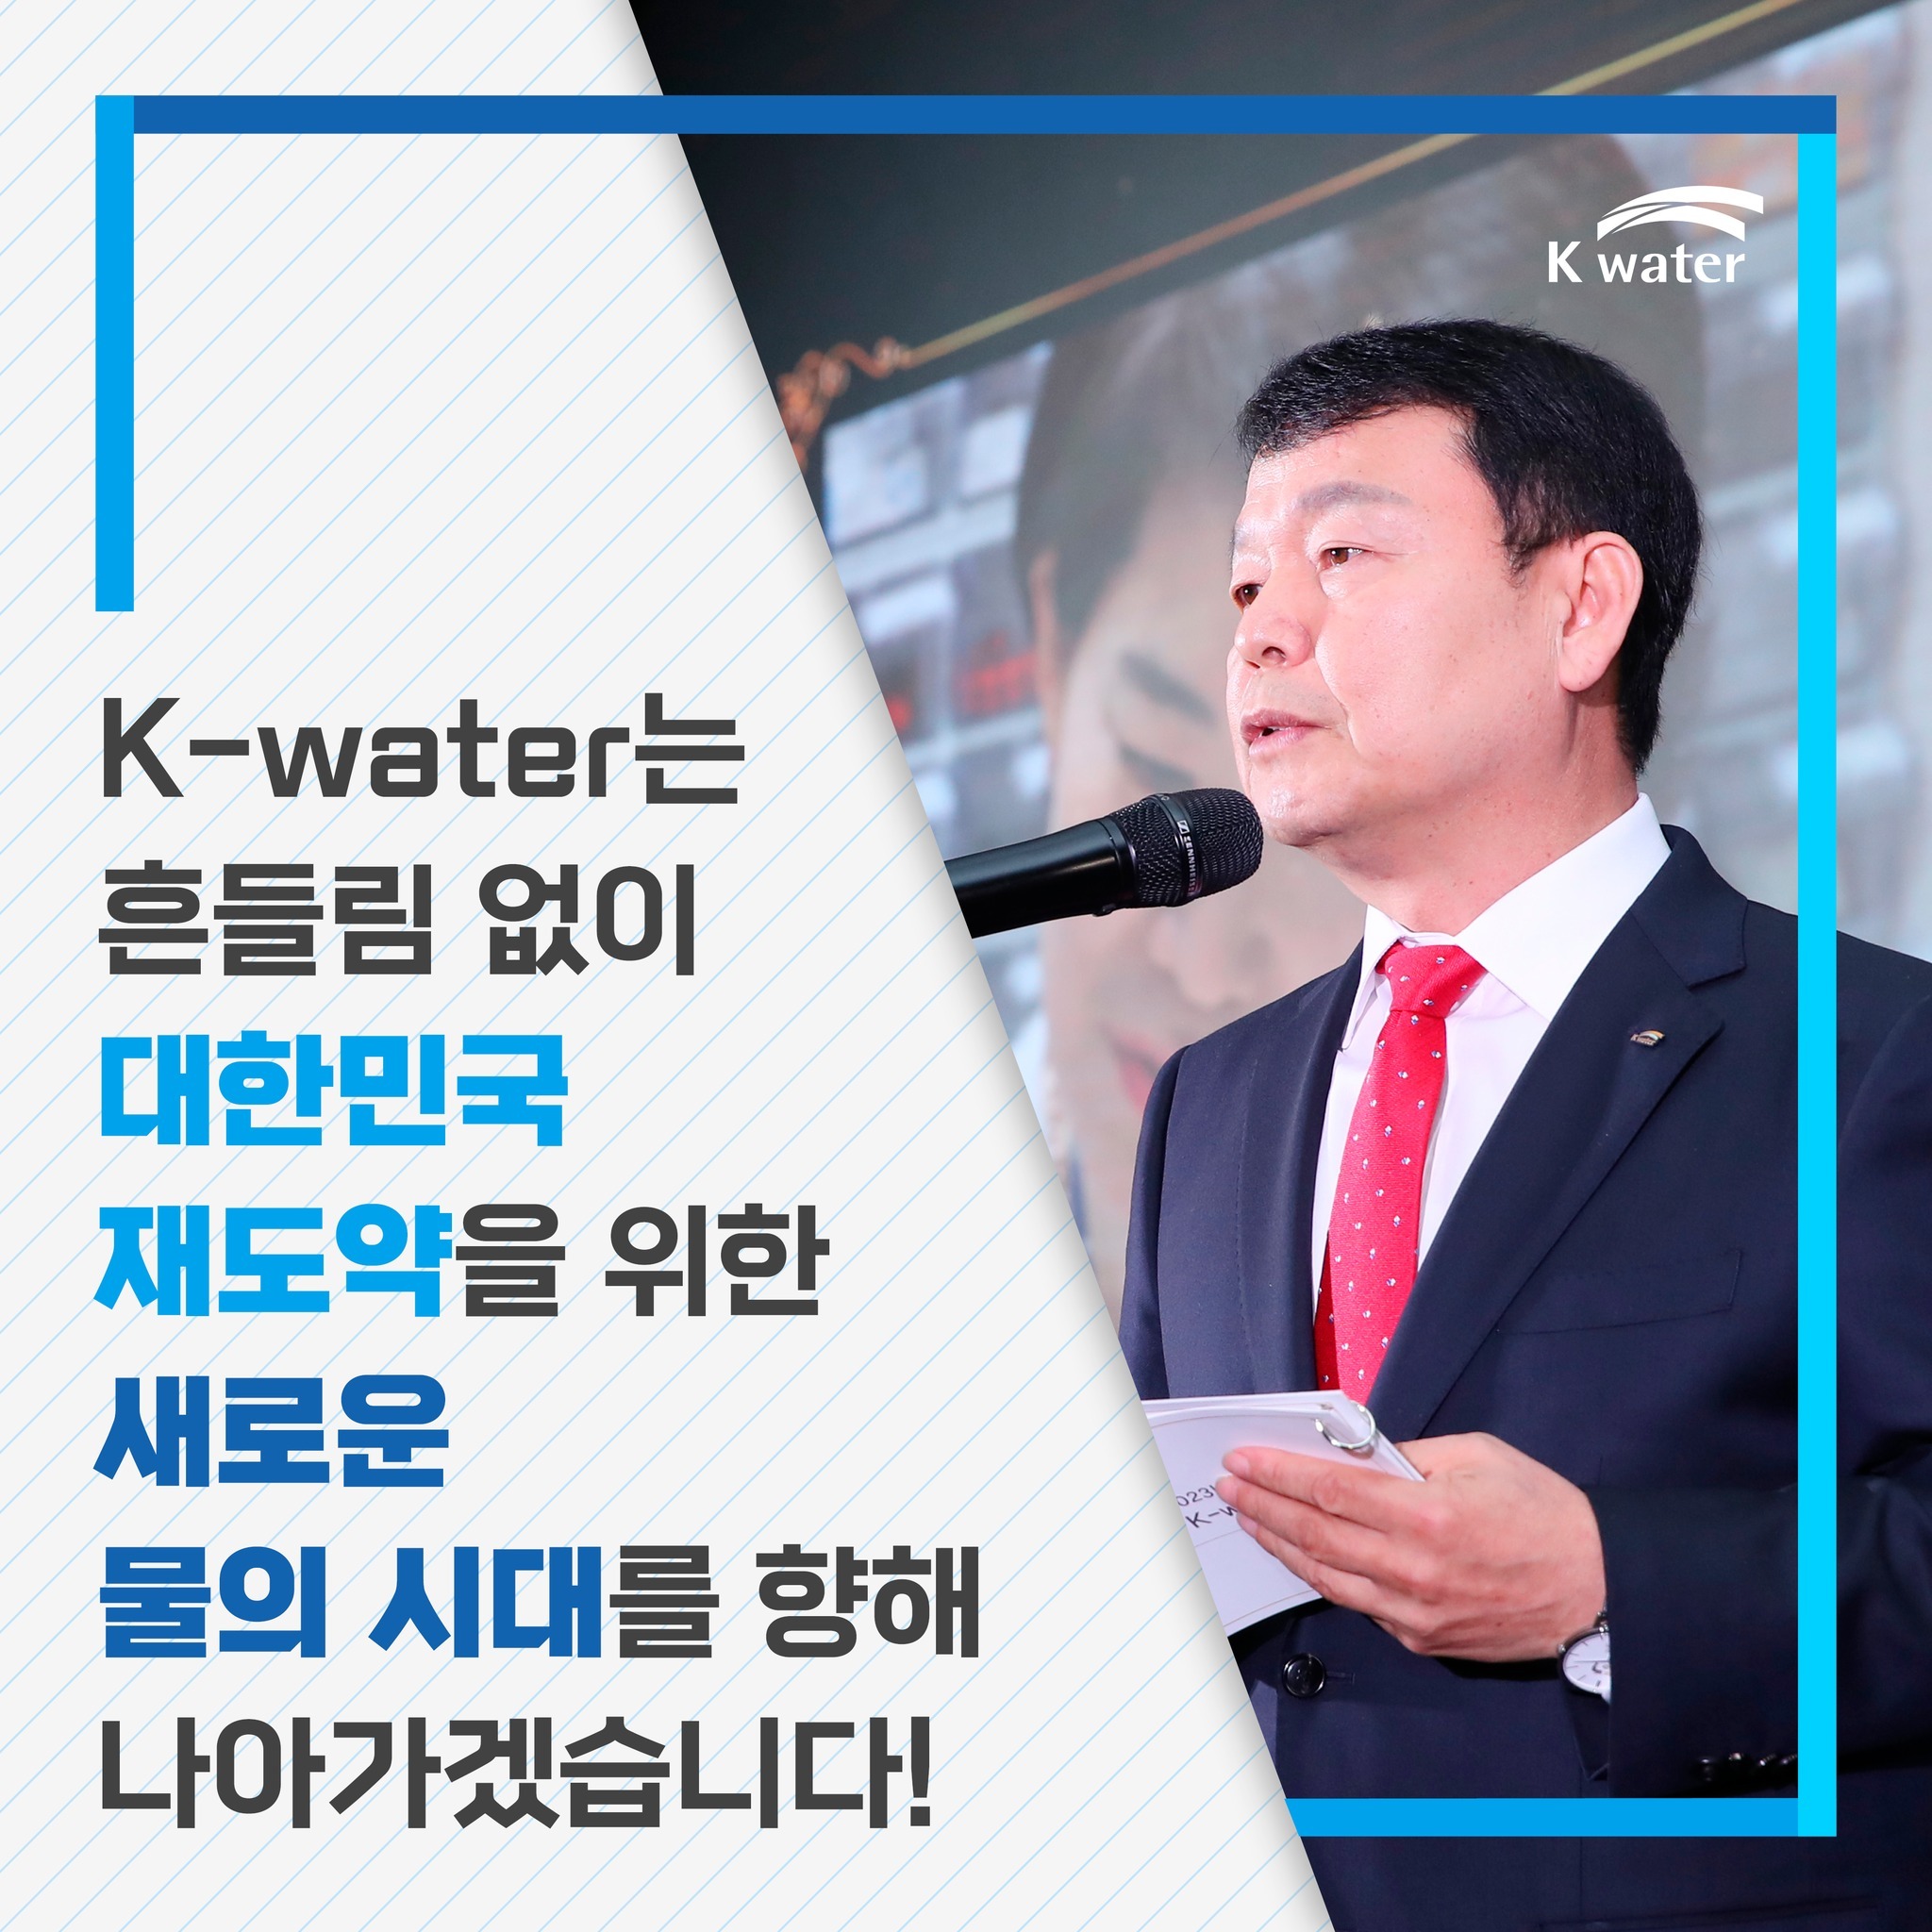 K-water는 흔들림 없이 대한민국 재도약을 위한 새로운 물의 시대를 향해 나아가겠습니다!